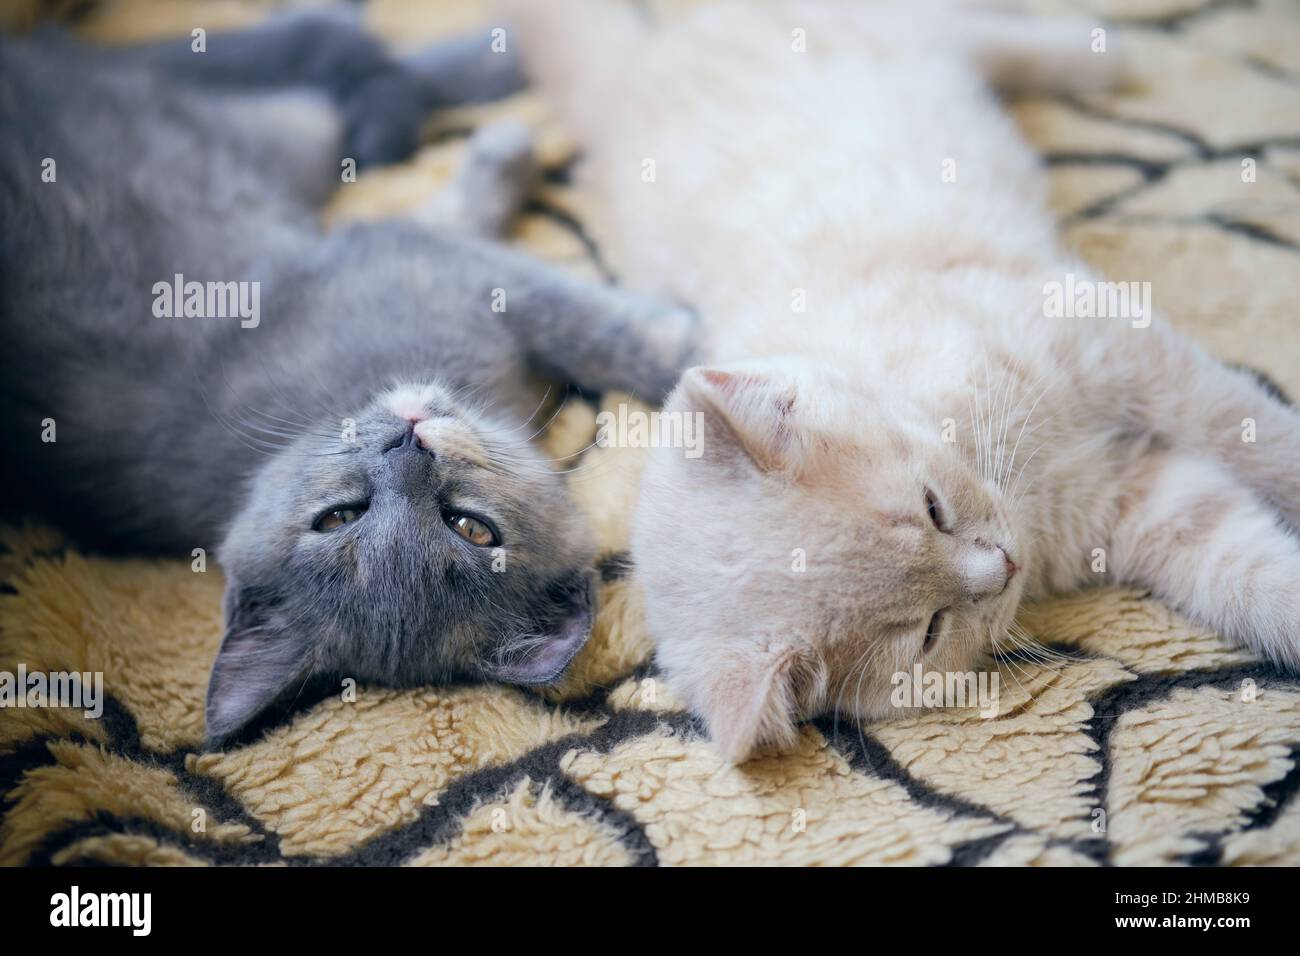 Gros plan de deux chats fatigués qui se sont mis sur la housse de lit Banque D'Images